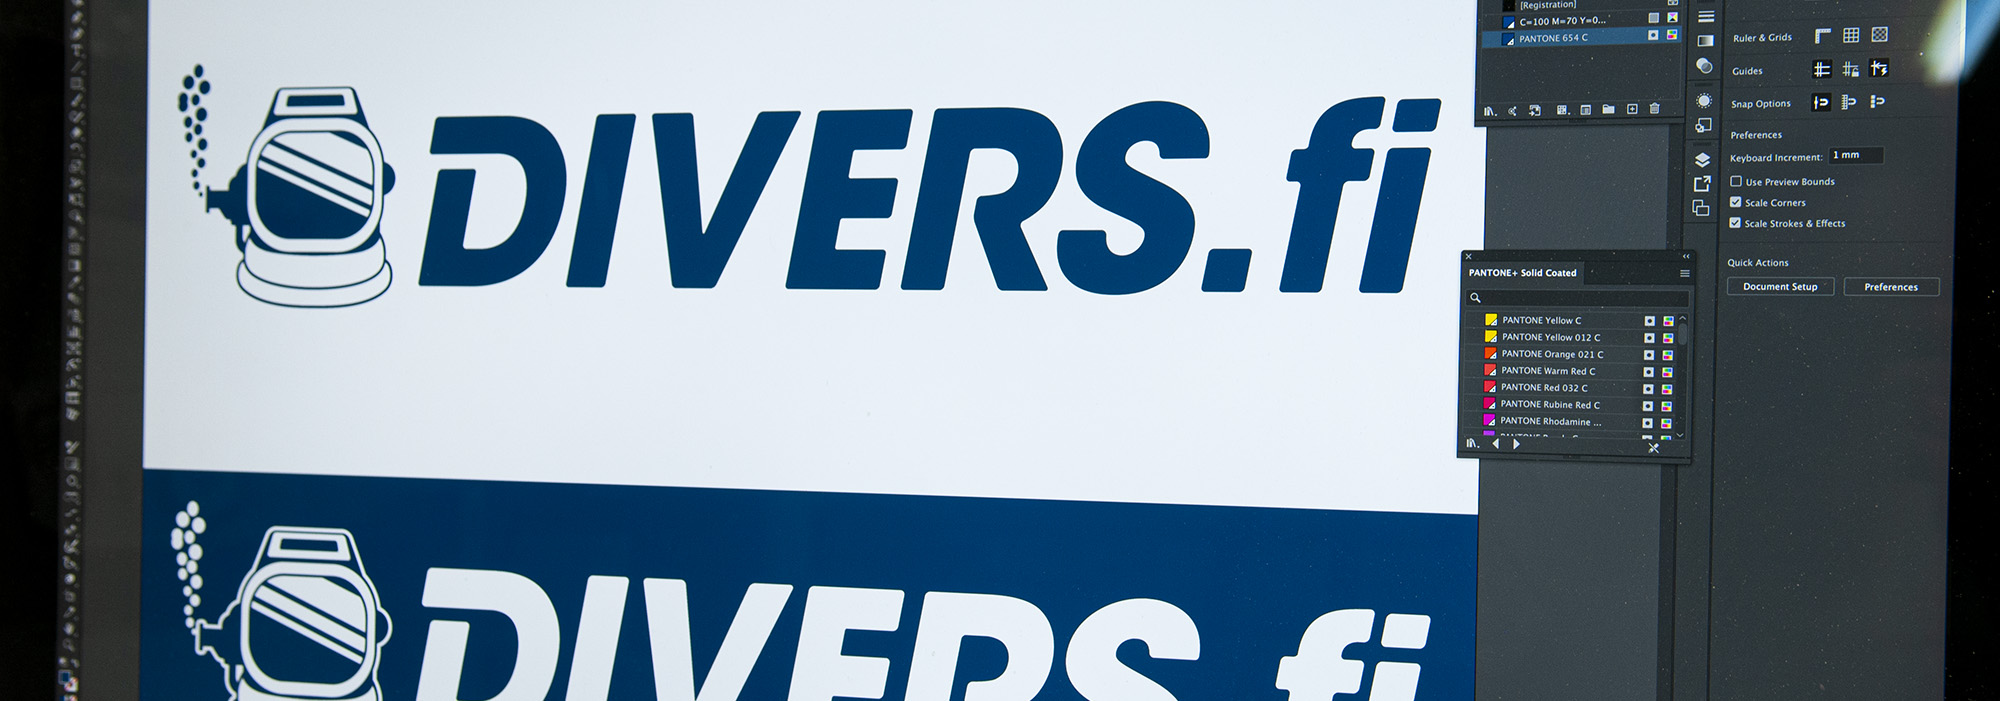 Suunnittelemamme Divers logo kuvaruudulla.